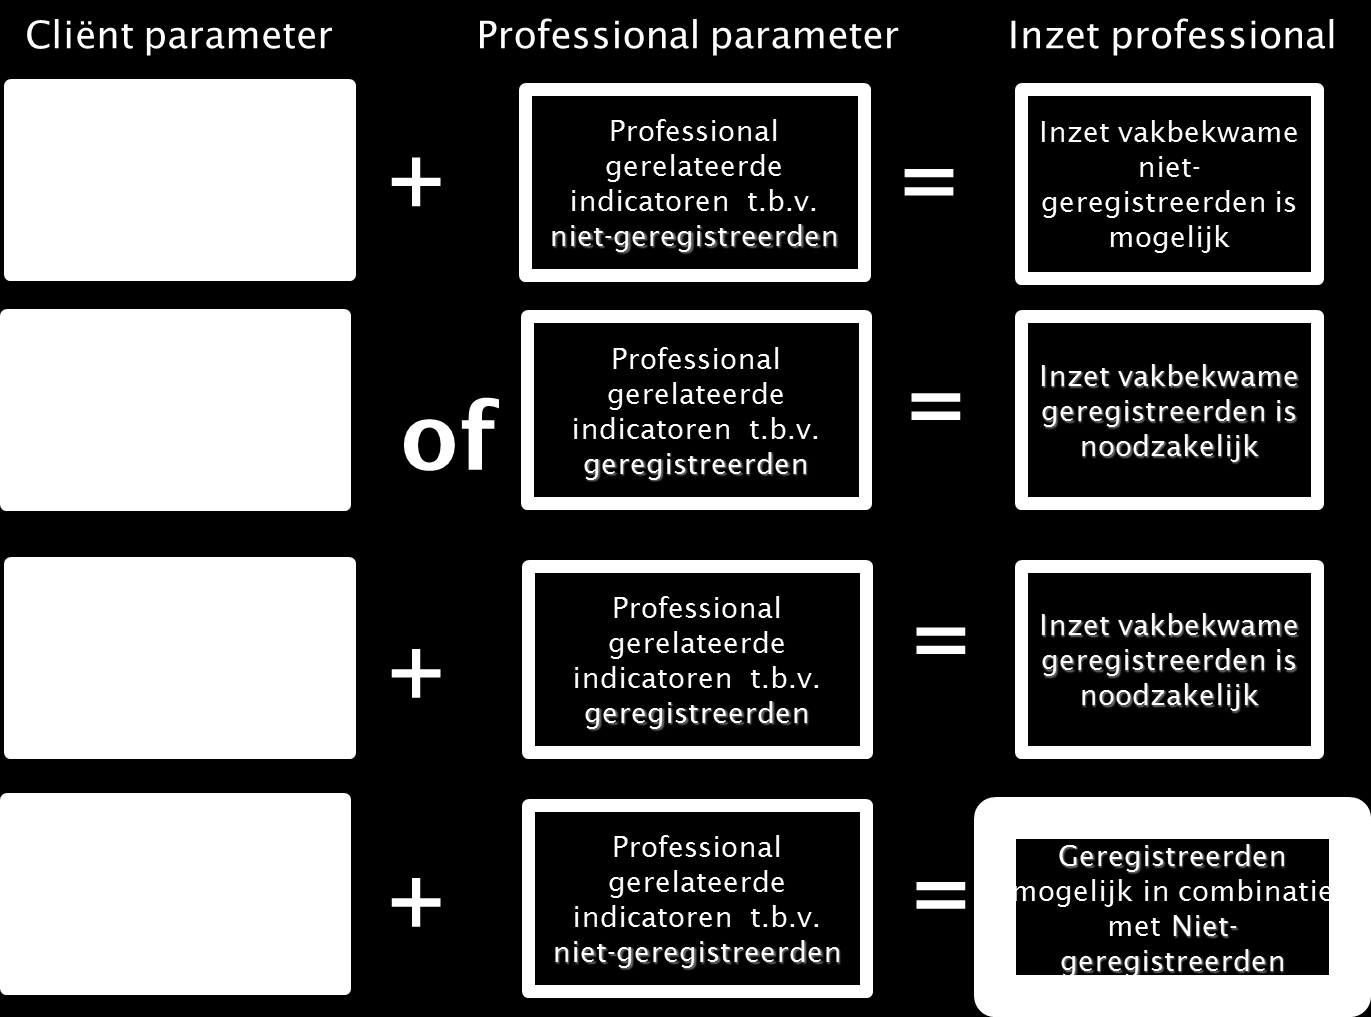 De combinatie van professional gerelateerde parameters en cliënt gerelateerde parameters bepaalt welke vakbekwaamheid en professionaliteit nodig is.